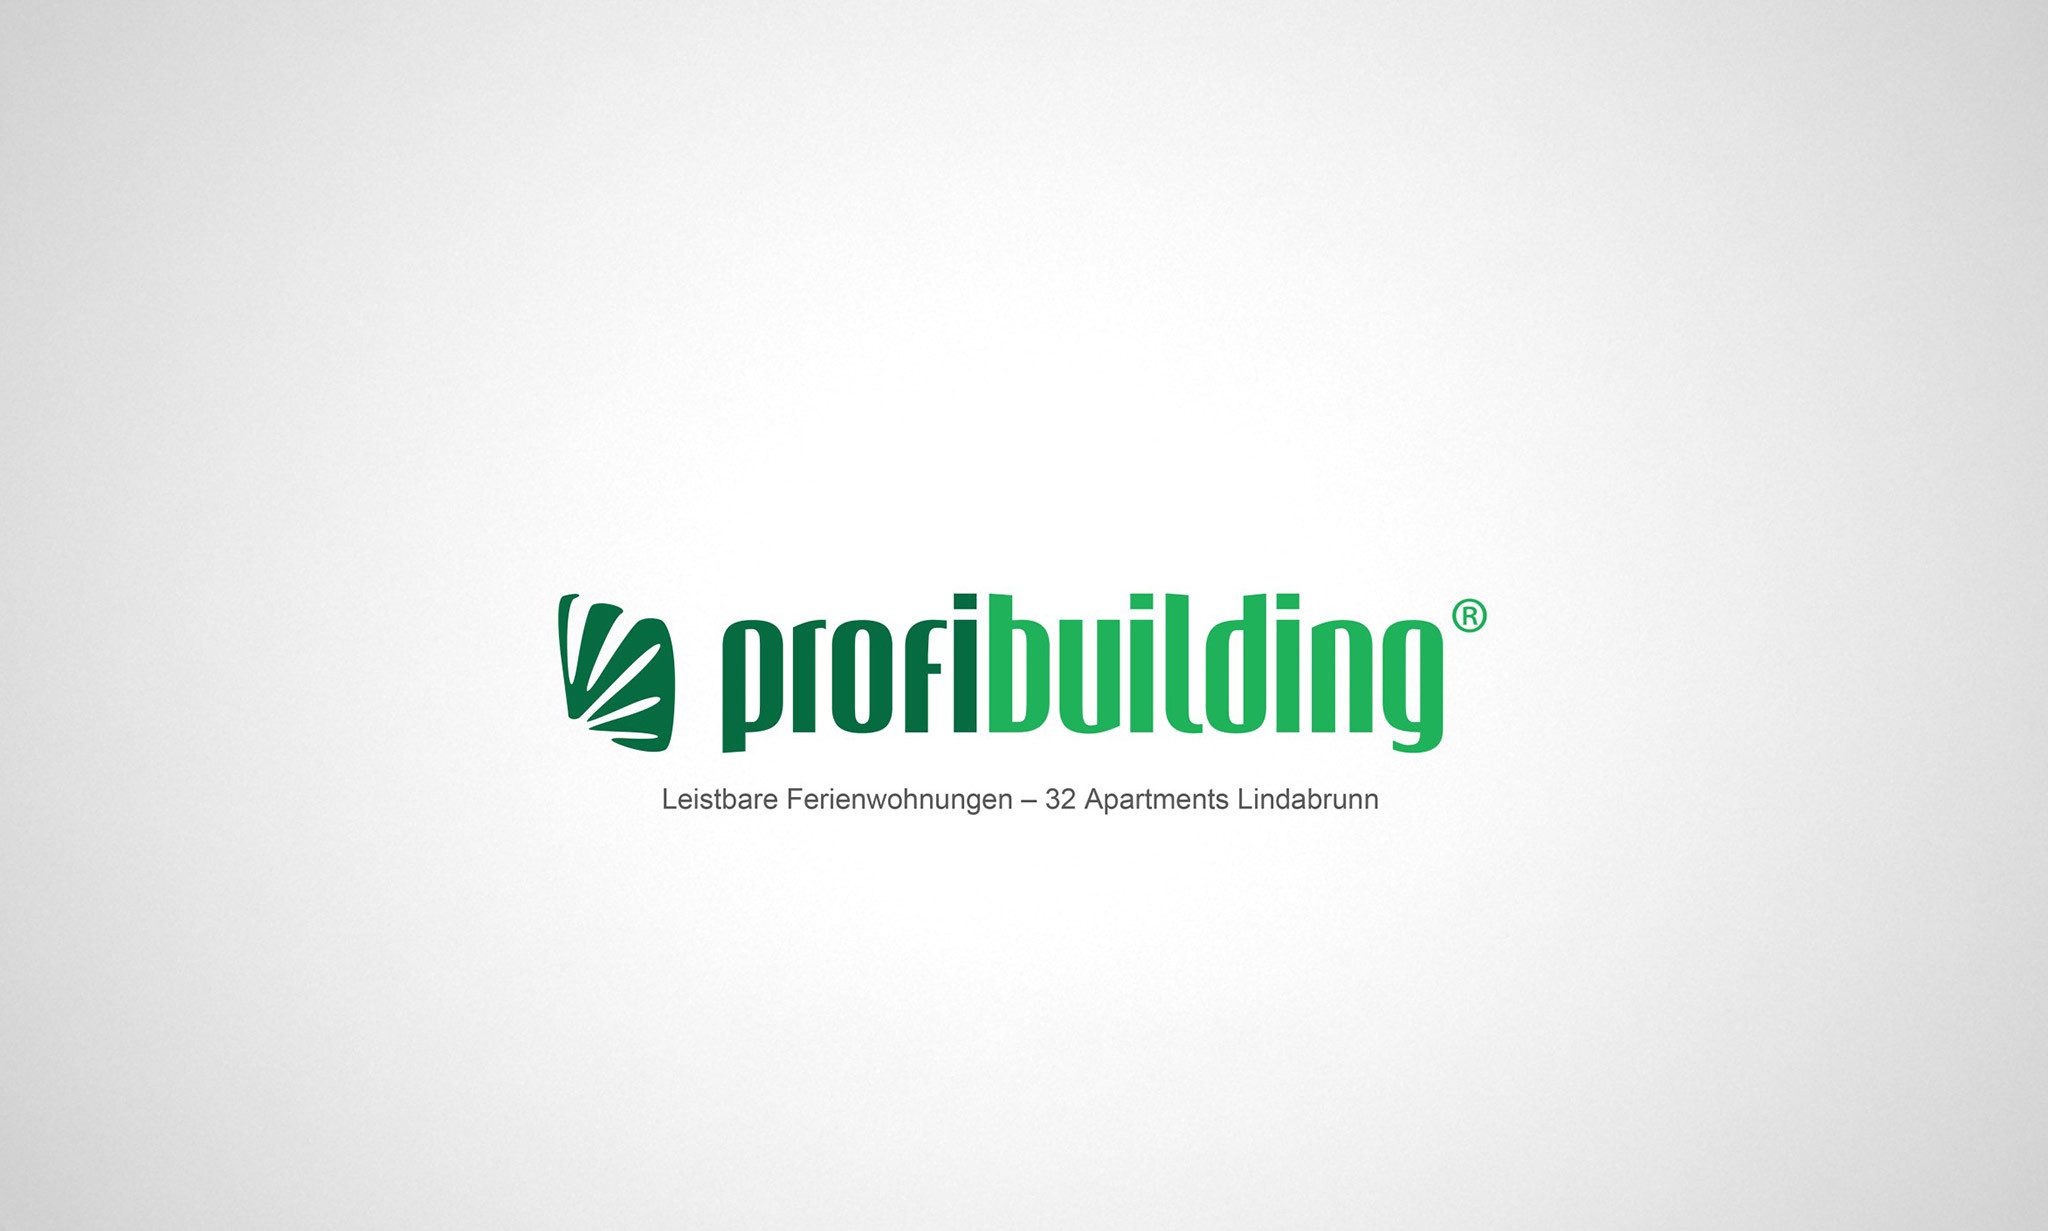 Анимационная презентаия - Profibuilding - Lindabrunn golf Apartments